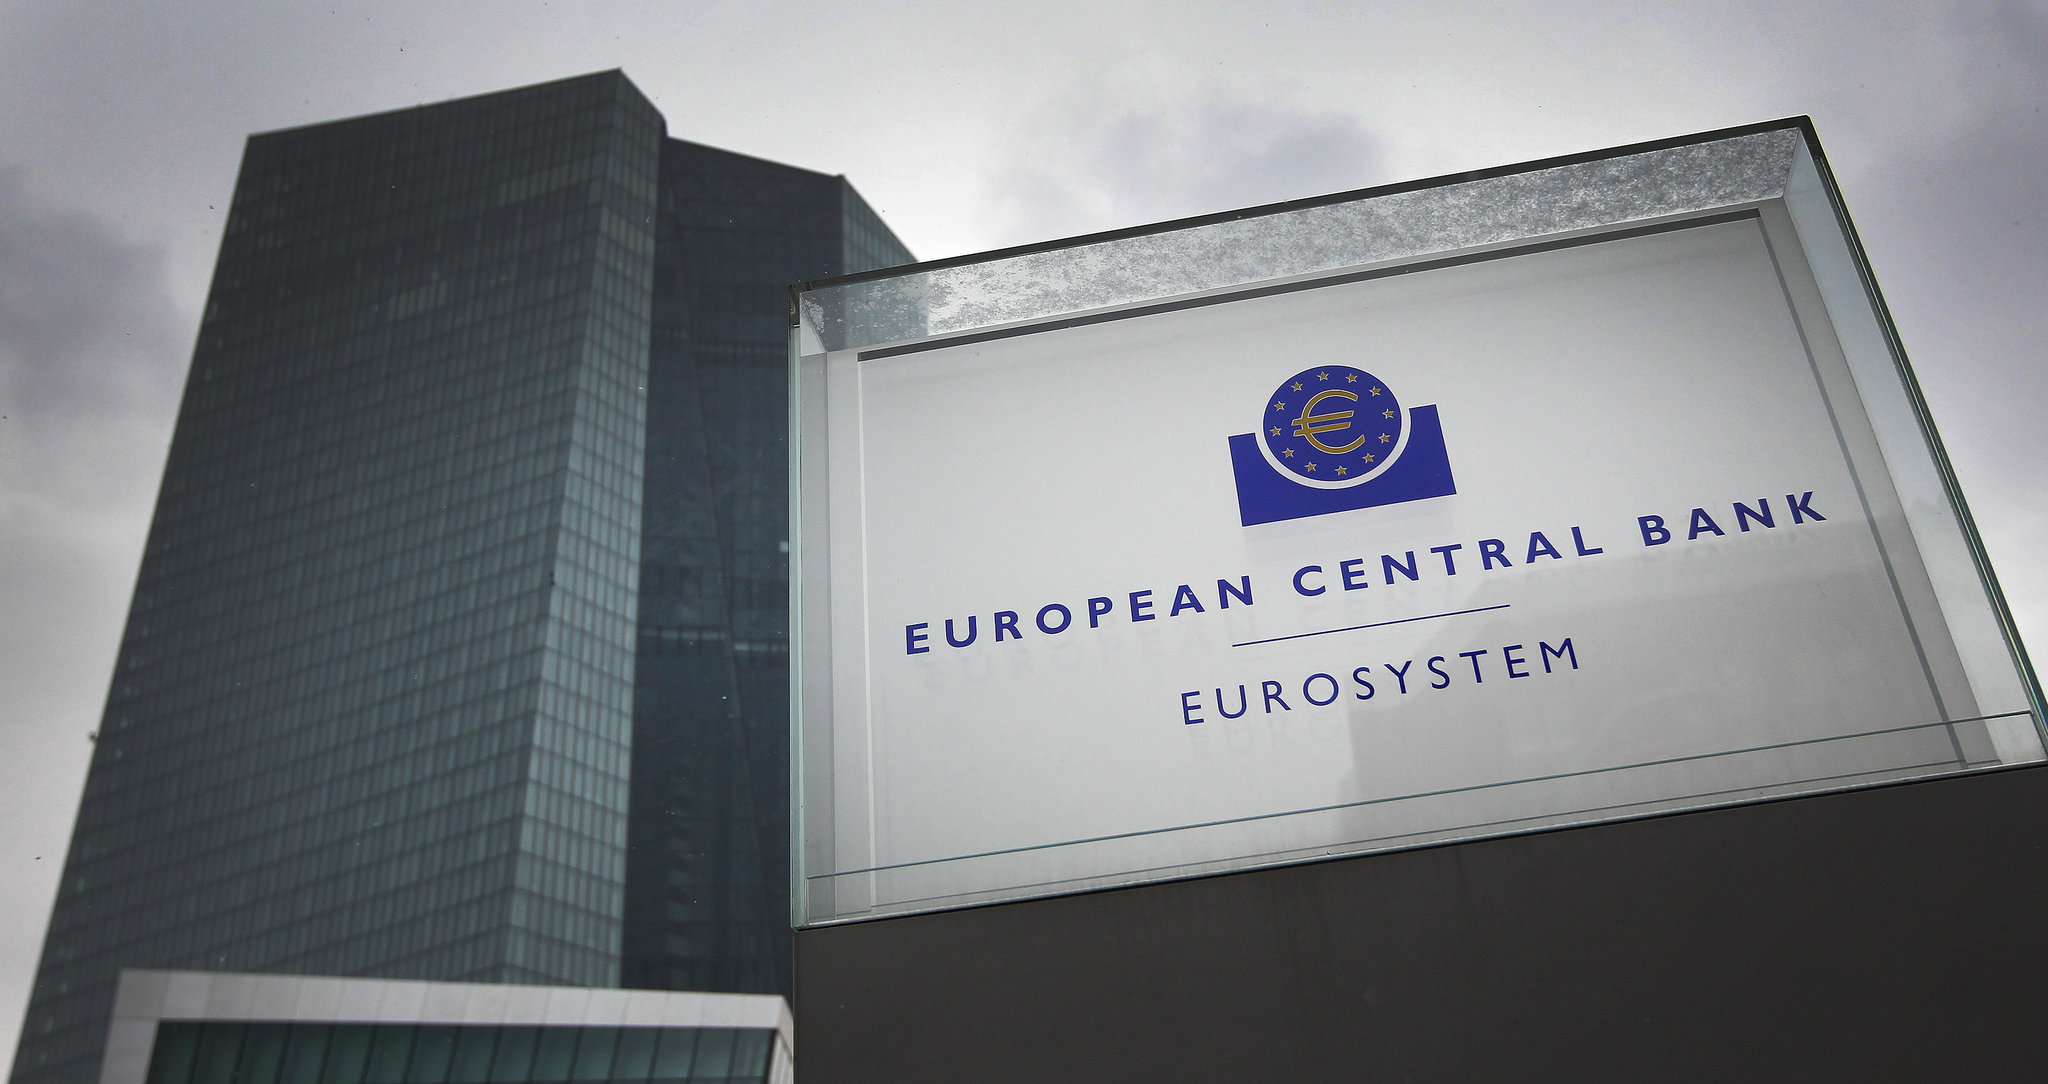 Ngân hàng Trung ương châu Âu sẽ làm gì để vực dậy nền kinh tế khu vực đồng Euro?